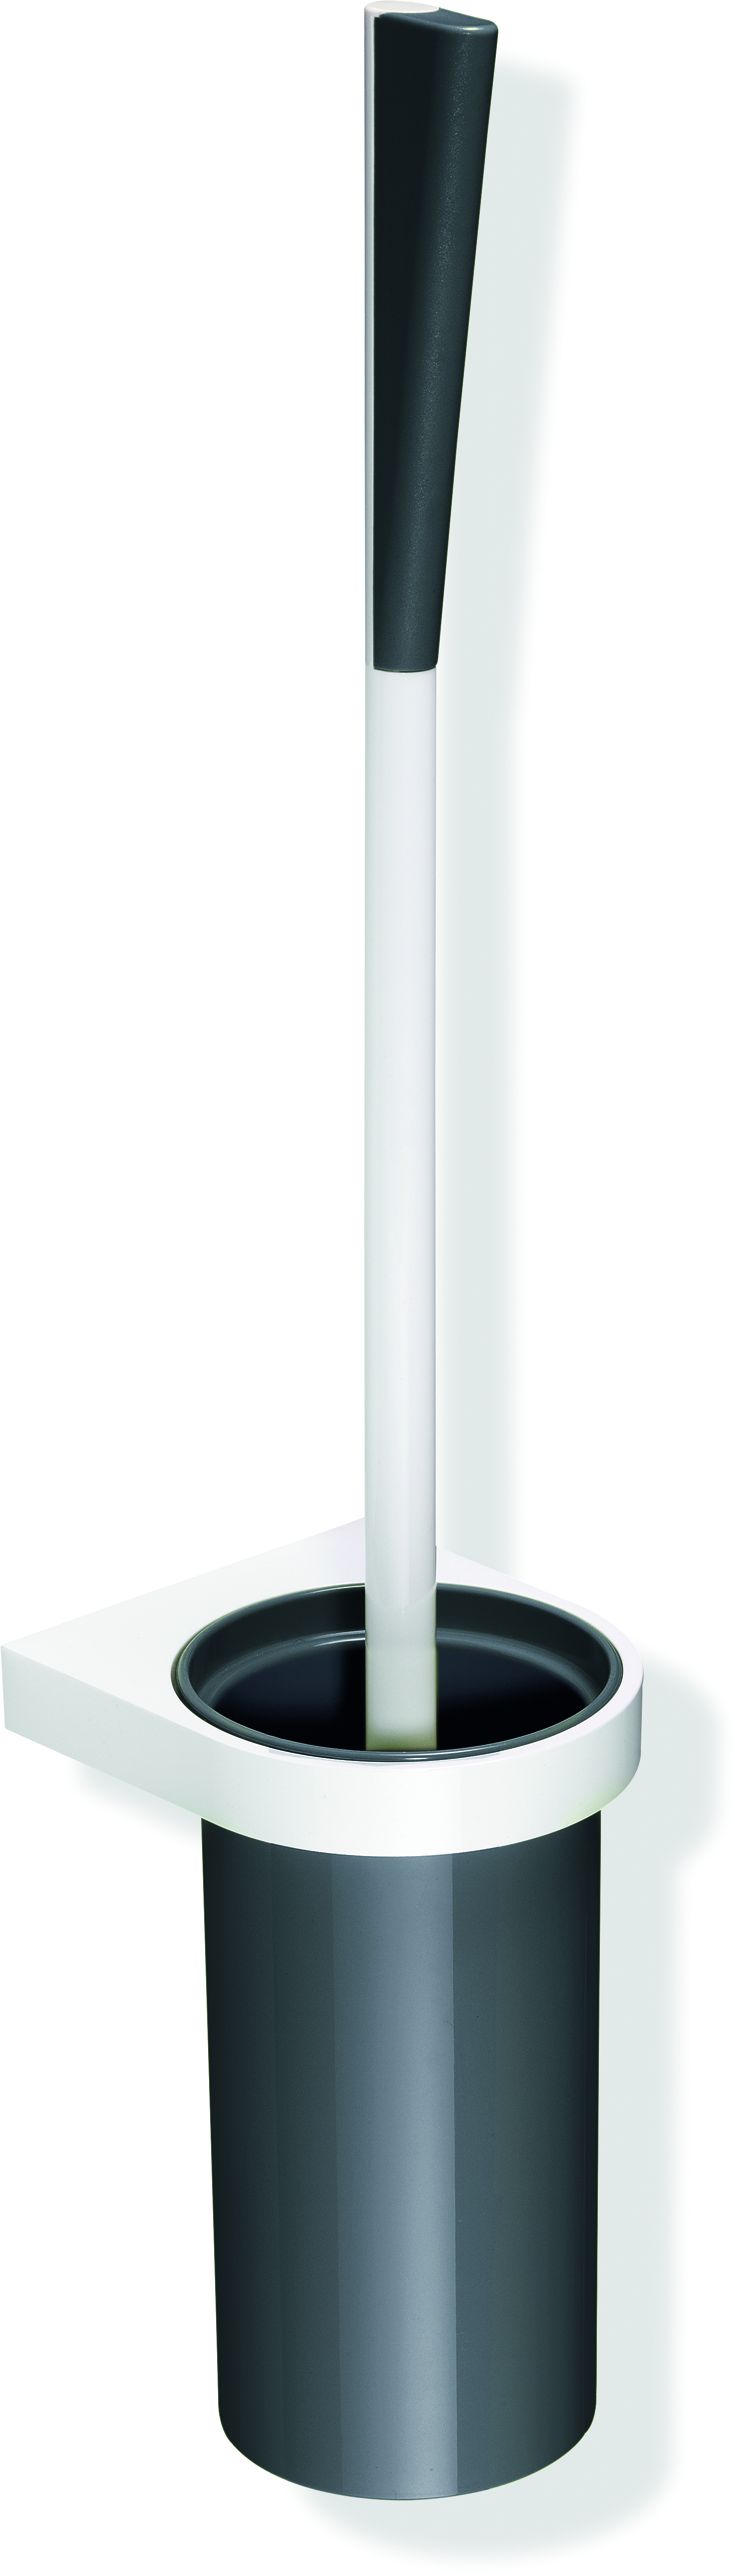 Hewi System 800 K Toilettenbürstengarnitur 800.20.2009197 Behälter Kunststoff, Halter und Bürstenstiel signalweiß, lichtgrau